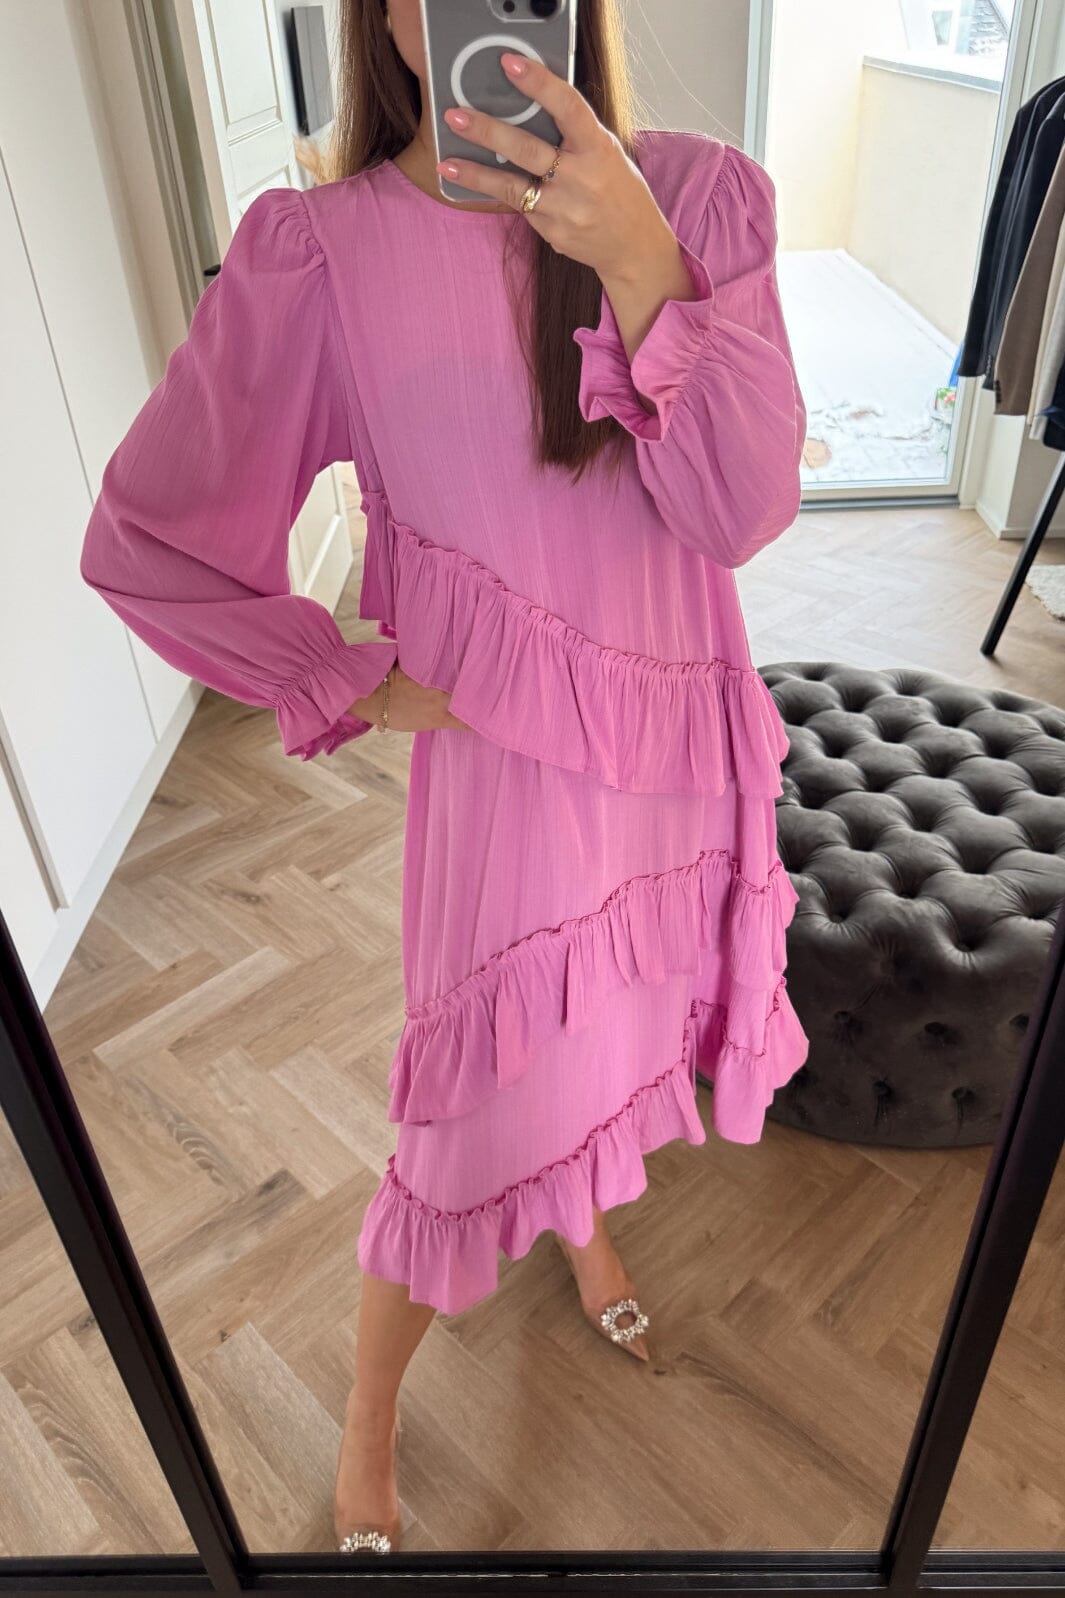 Noella - Sierra Frill Dress - Light Pink Kjoler 